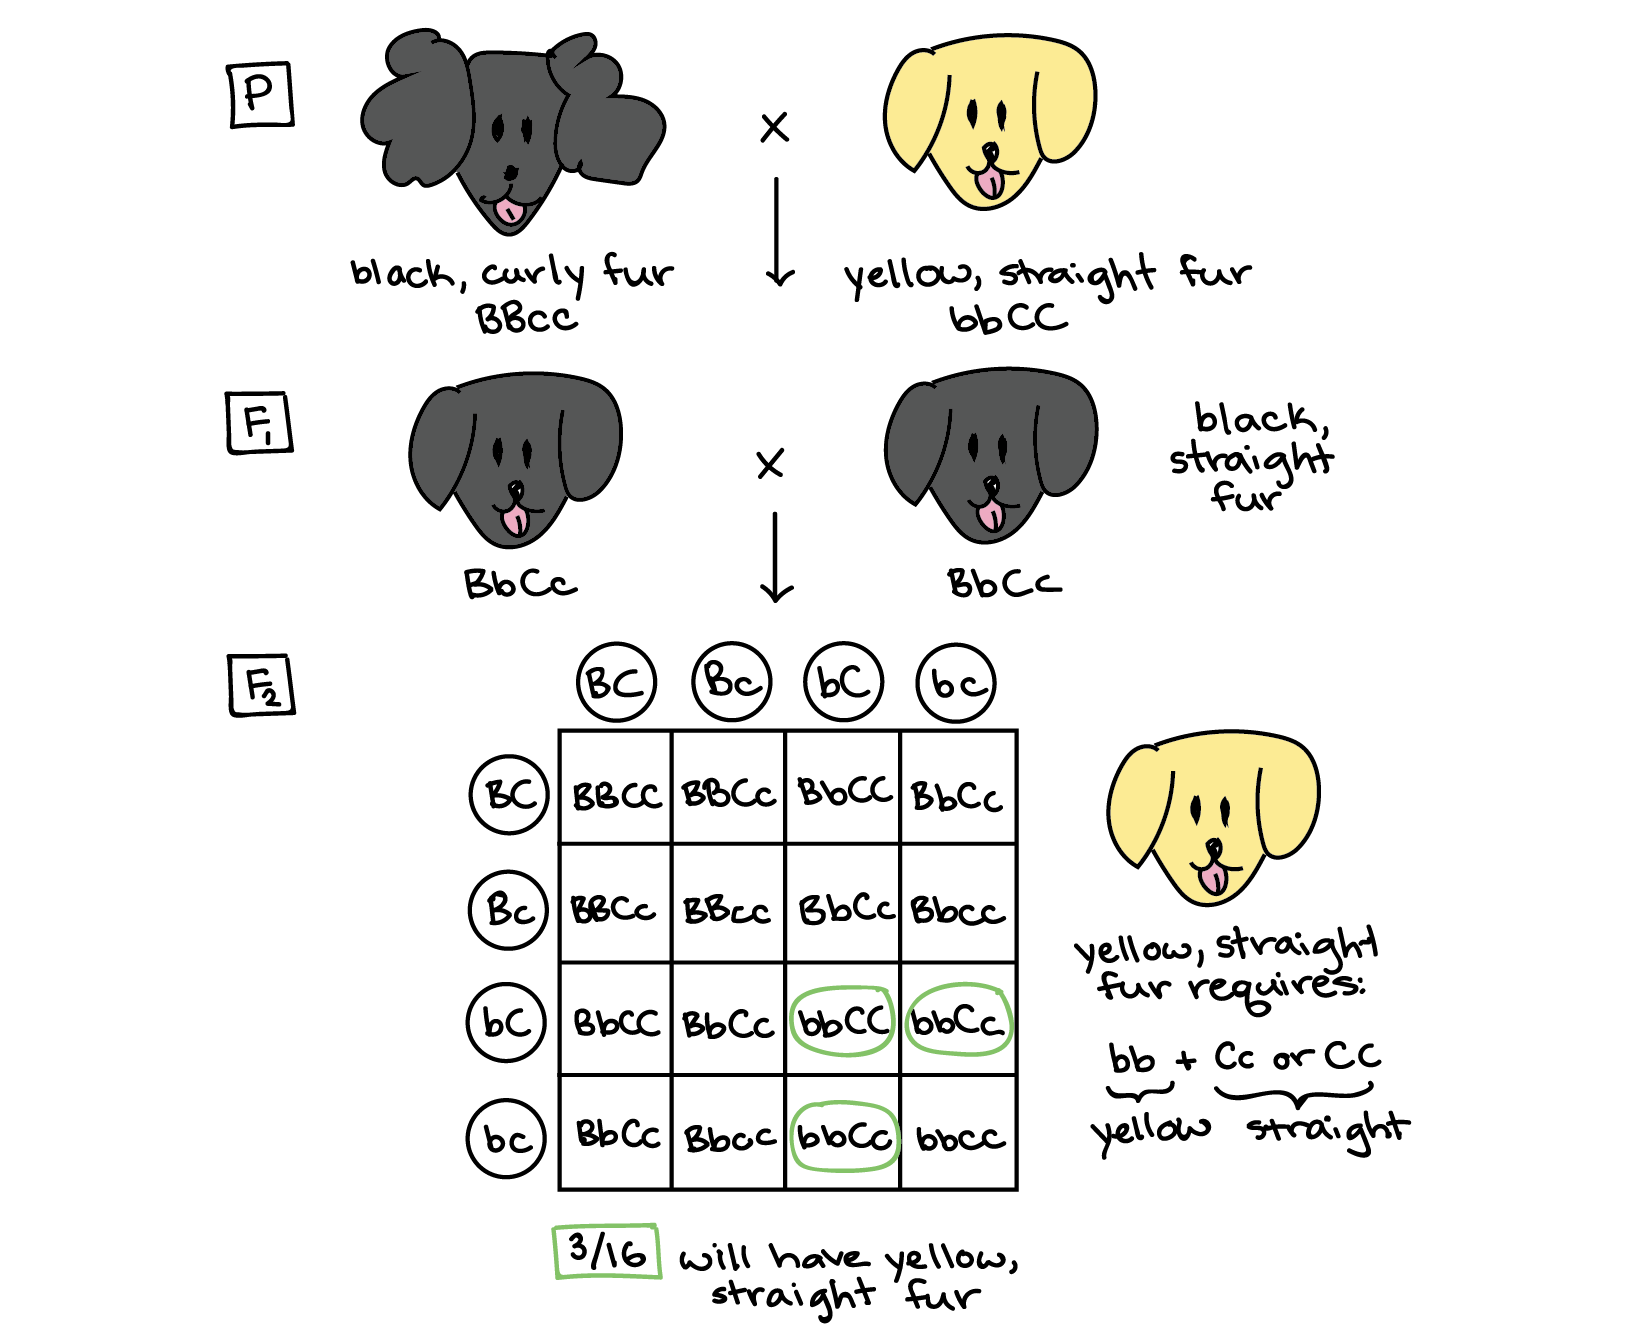 Diagrama anotado que ilustra la solución al problema del pelaje del perro. Generación P: El progenitor negro de pelo rizado es del genotipo BBCC. El progenitor amarillo de pelaje recto es del genotipo BBcc. Generación F1: Todos los perros F1 son de genotipo BBcc. Los perros F1 se cruzan para producir una generación F2. Generación F2: Cuadrado Punnett: ||BC|BC|BC|BC-|-|-|-|-|-|-BC||BBCC|BBCC|BBCC|BBCC|BBCC|BBCC|BBCC|BBCC|BBCC|BBCC|BBCC|**BBCC|**BBCC**|**BBCC**BC|BBCC|BBCC|BBCC|**BBCC**BBCC Cachorros de BBCC o Los genotipos BBcc serán amarillos y tendrán pelaje recto. 3 de las 16 cajas del cuadrado Punnett corresponden a estos genotipos.